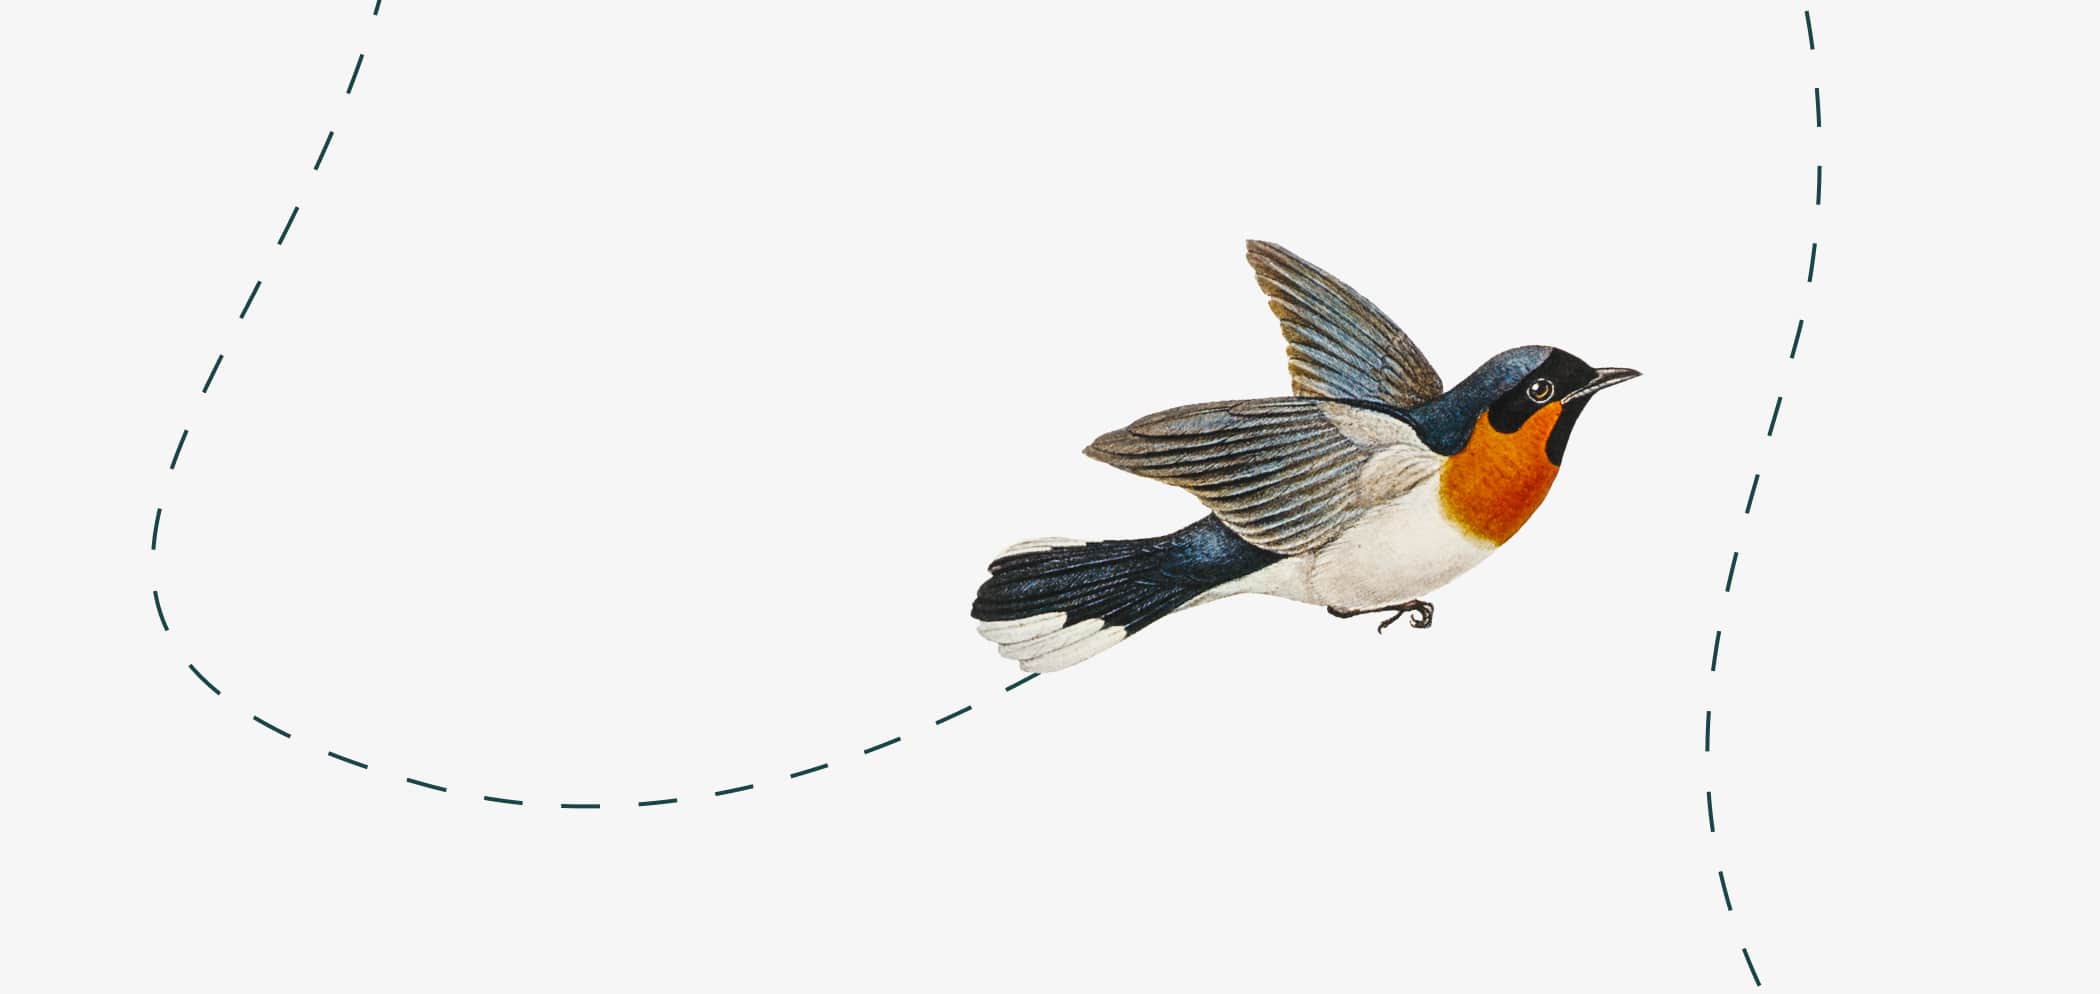 Illustration of a bird flying.